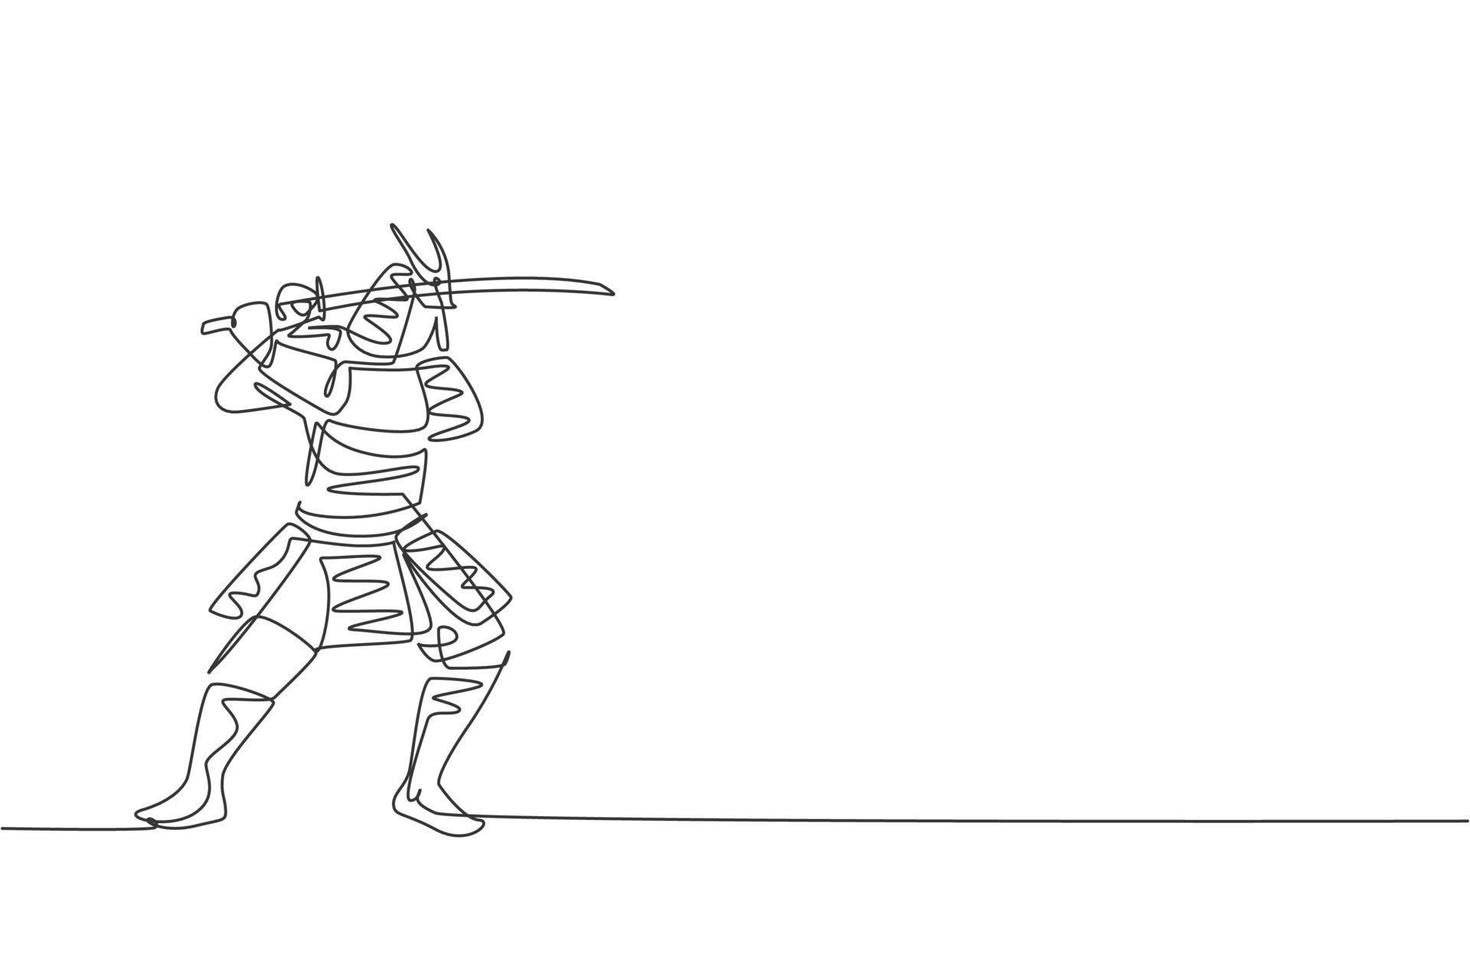 disegno a linea continua singola di un giovane e forte shogun samurai che indossa l'uniforme tradizionale che tiene la spada al festival. antico concetto di soldato combattente. illustrazione vettoriale di disegno di una linea alla moda